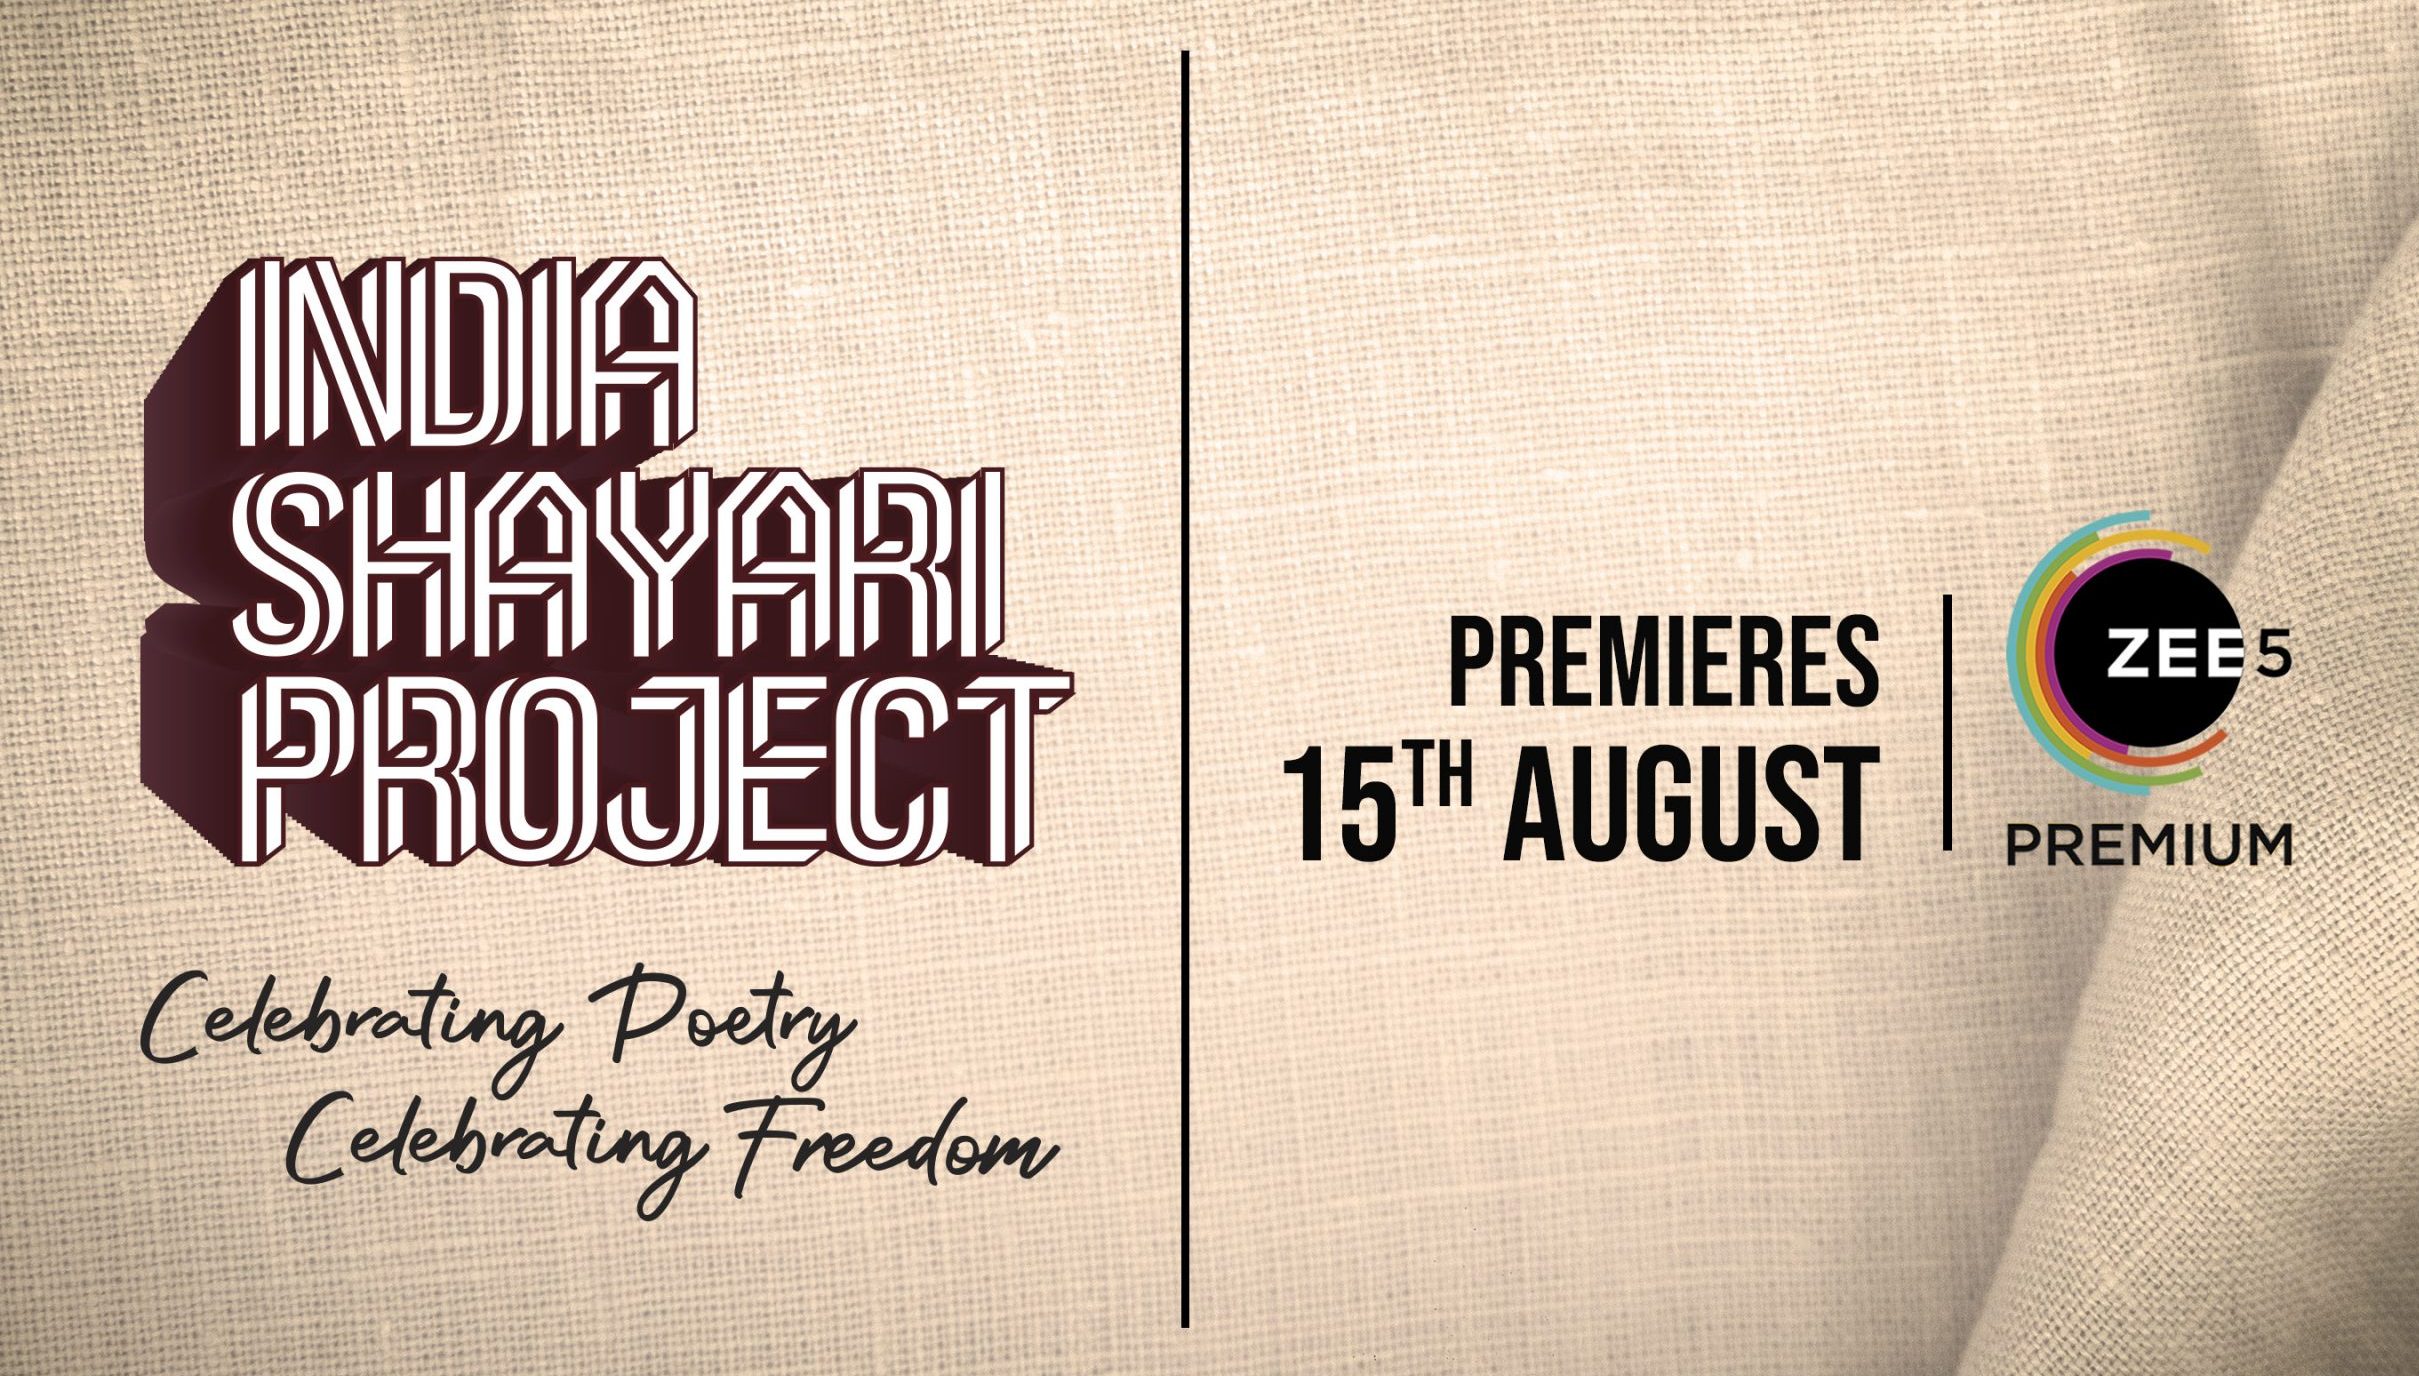 #ZEELIVE launches ‘#IndiaShayariProject’!